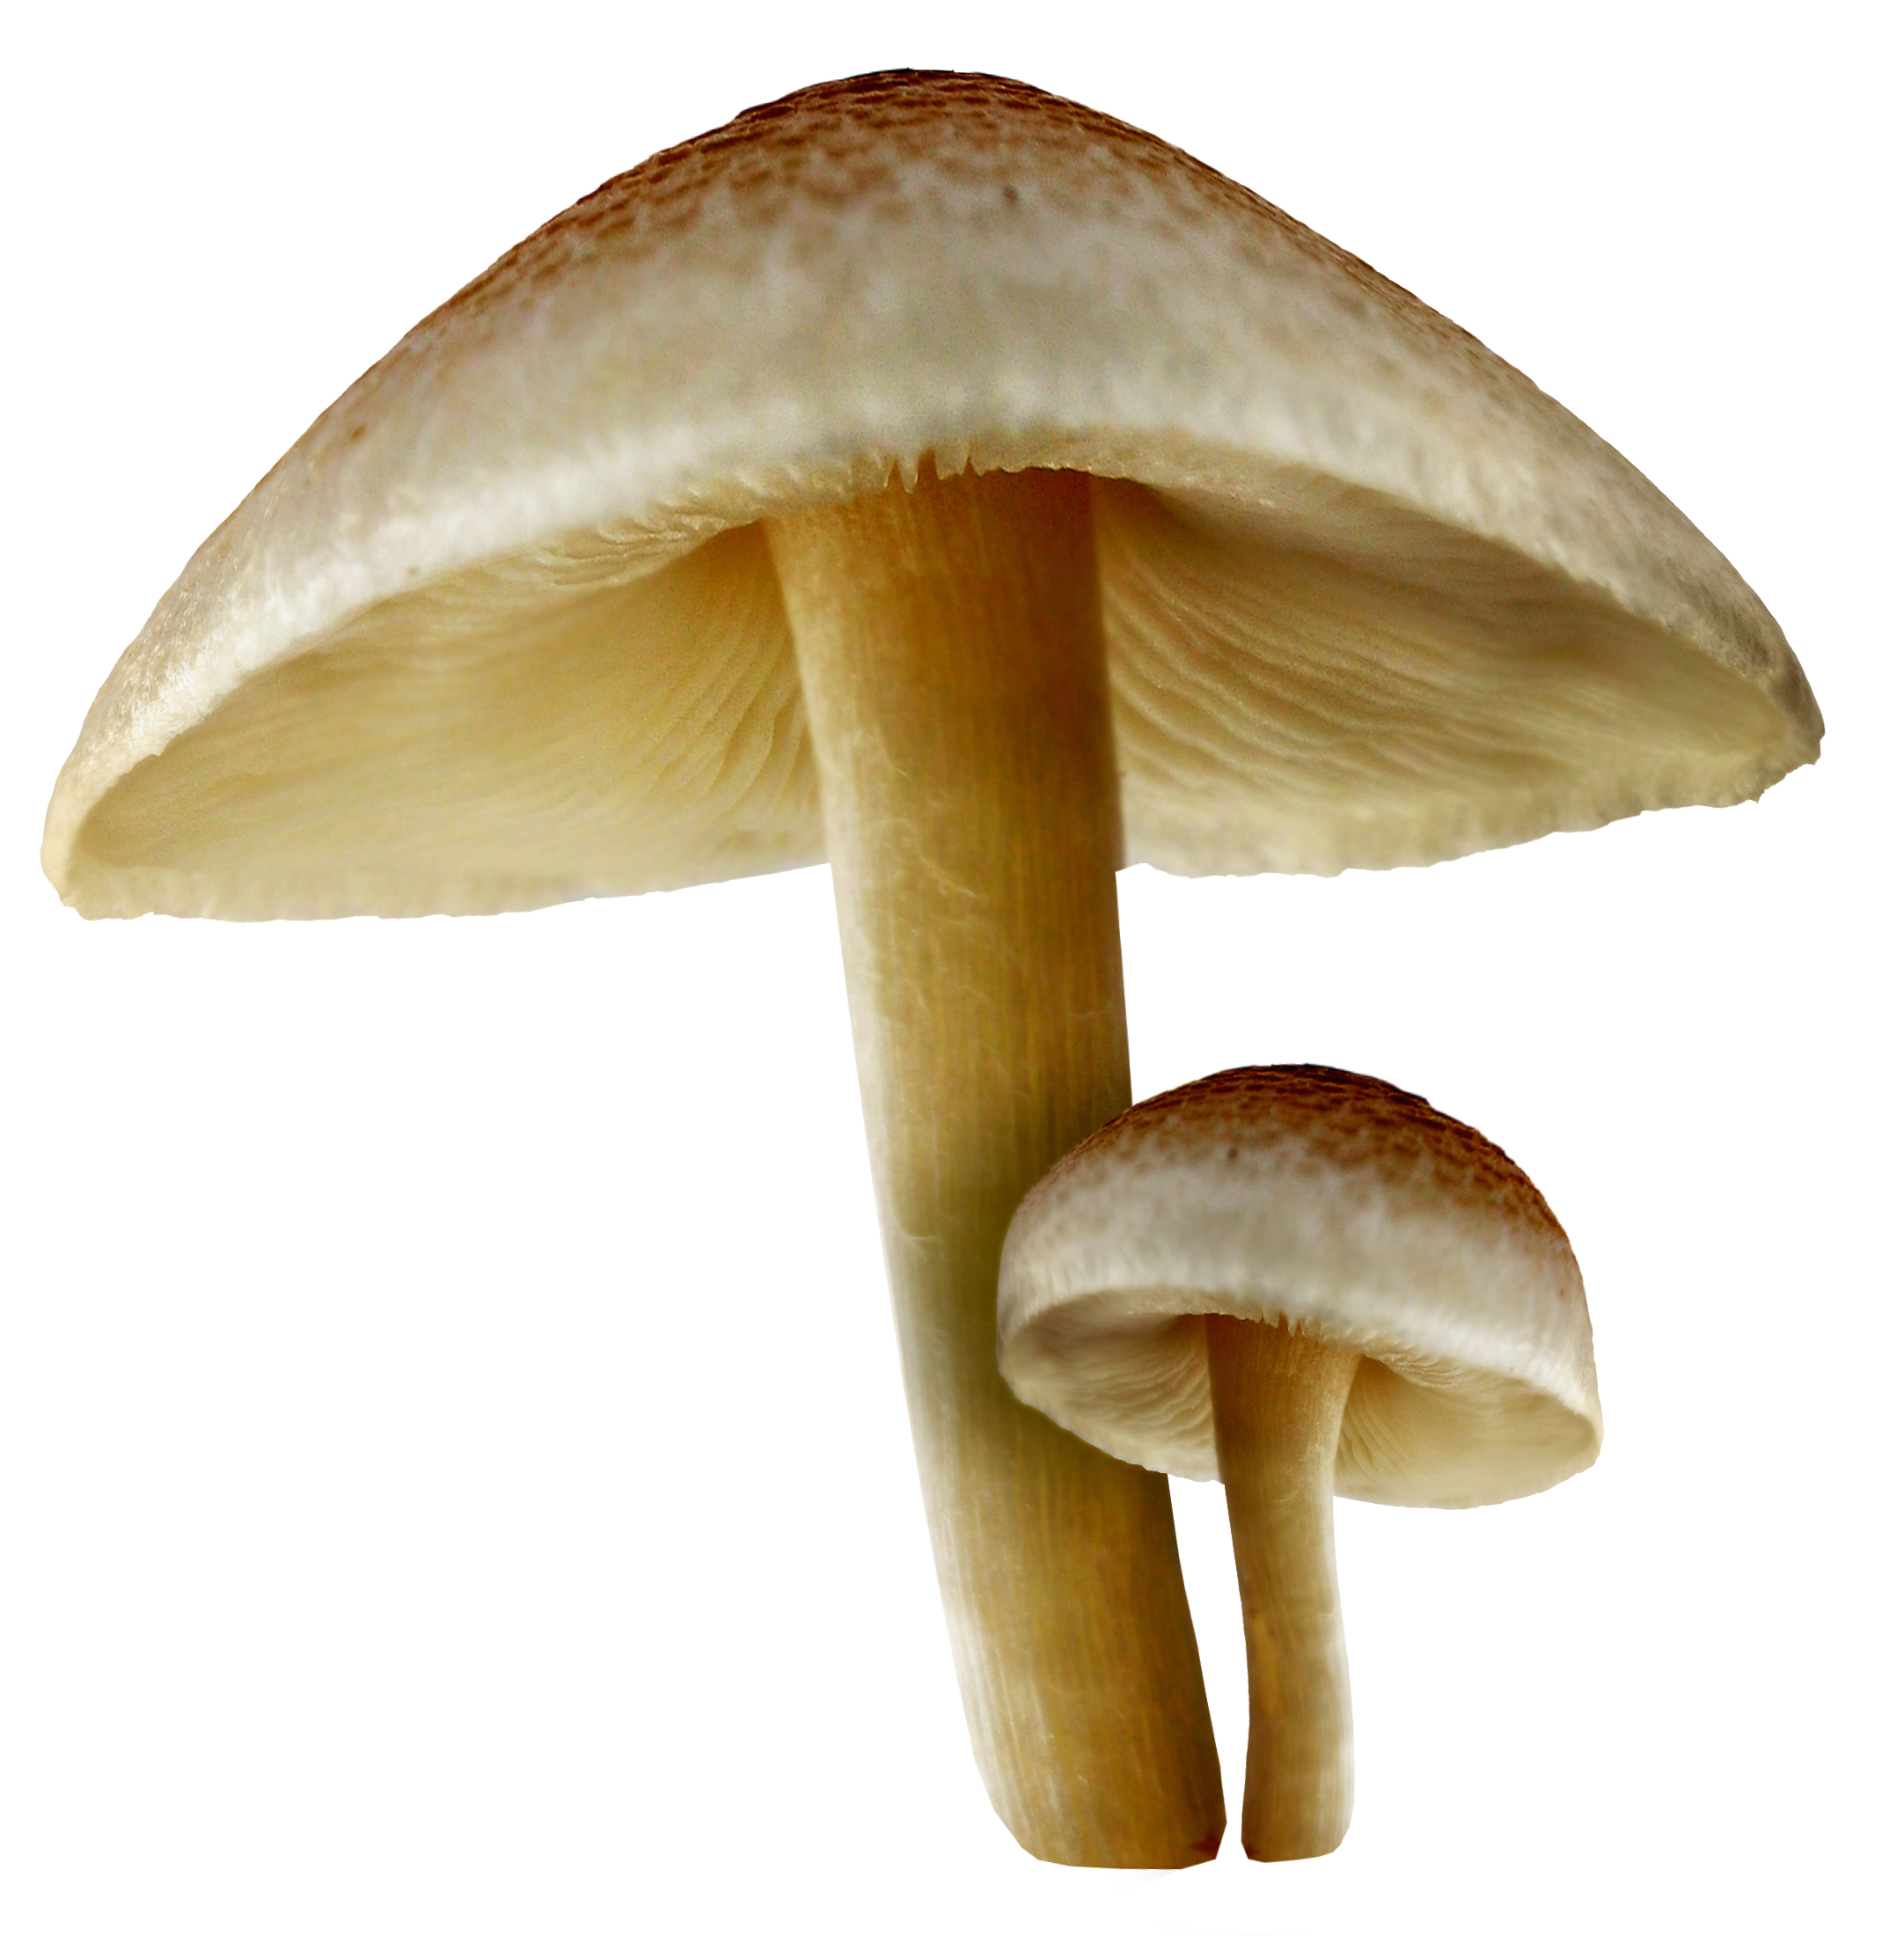 mushroom clipart agaricus